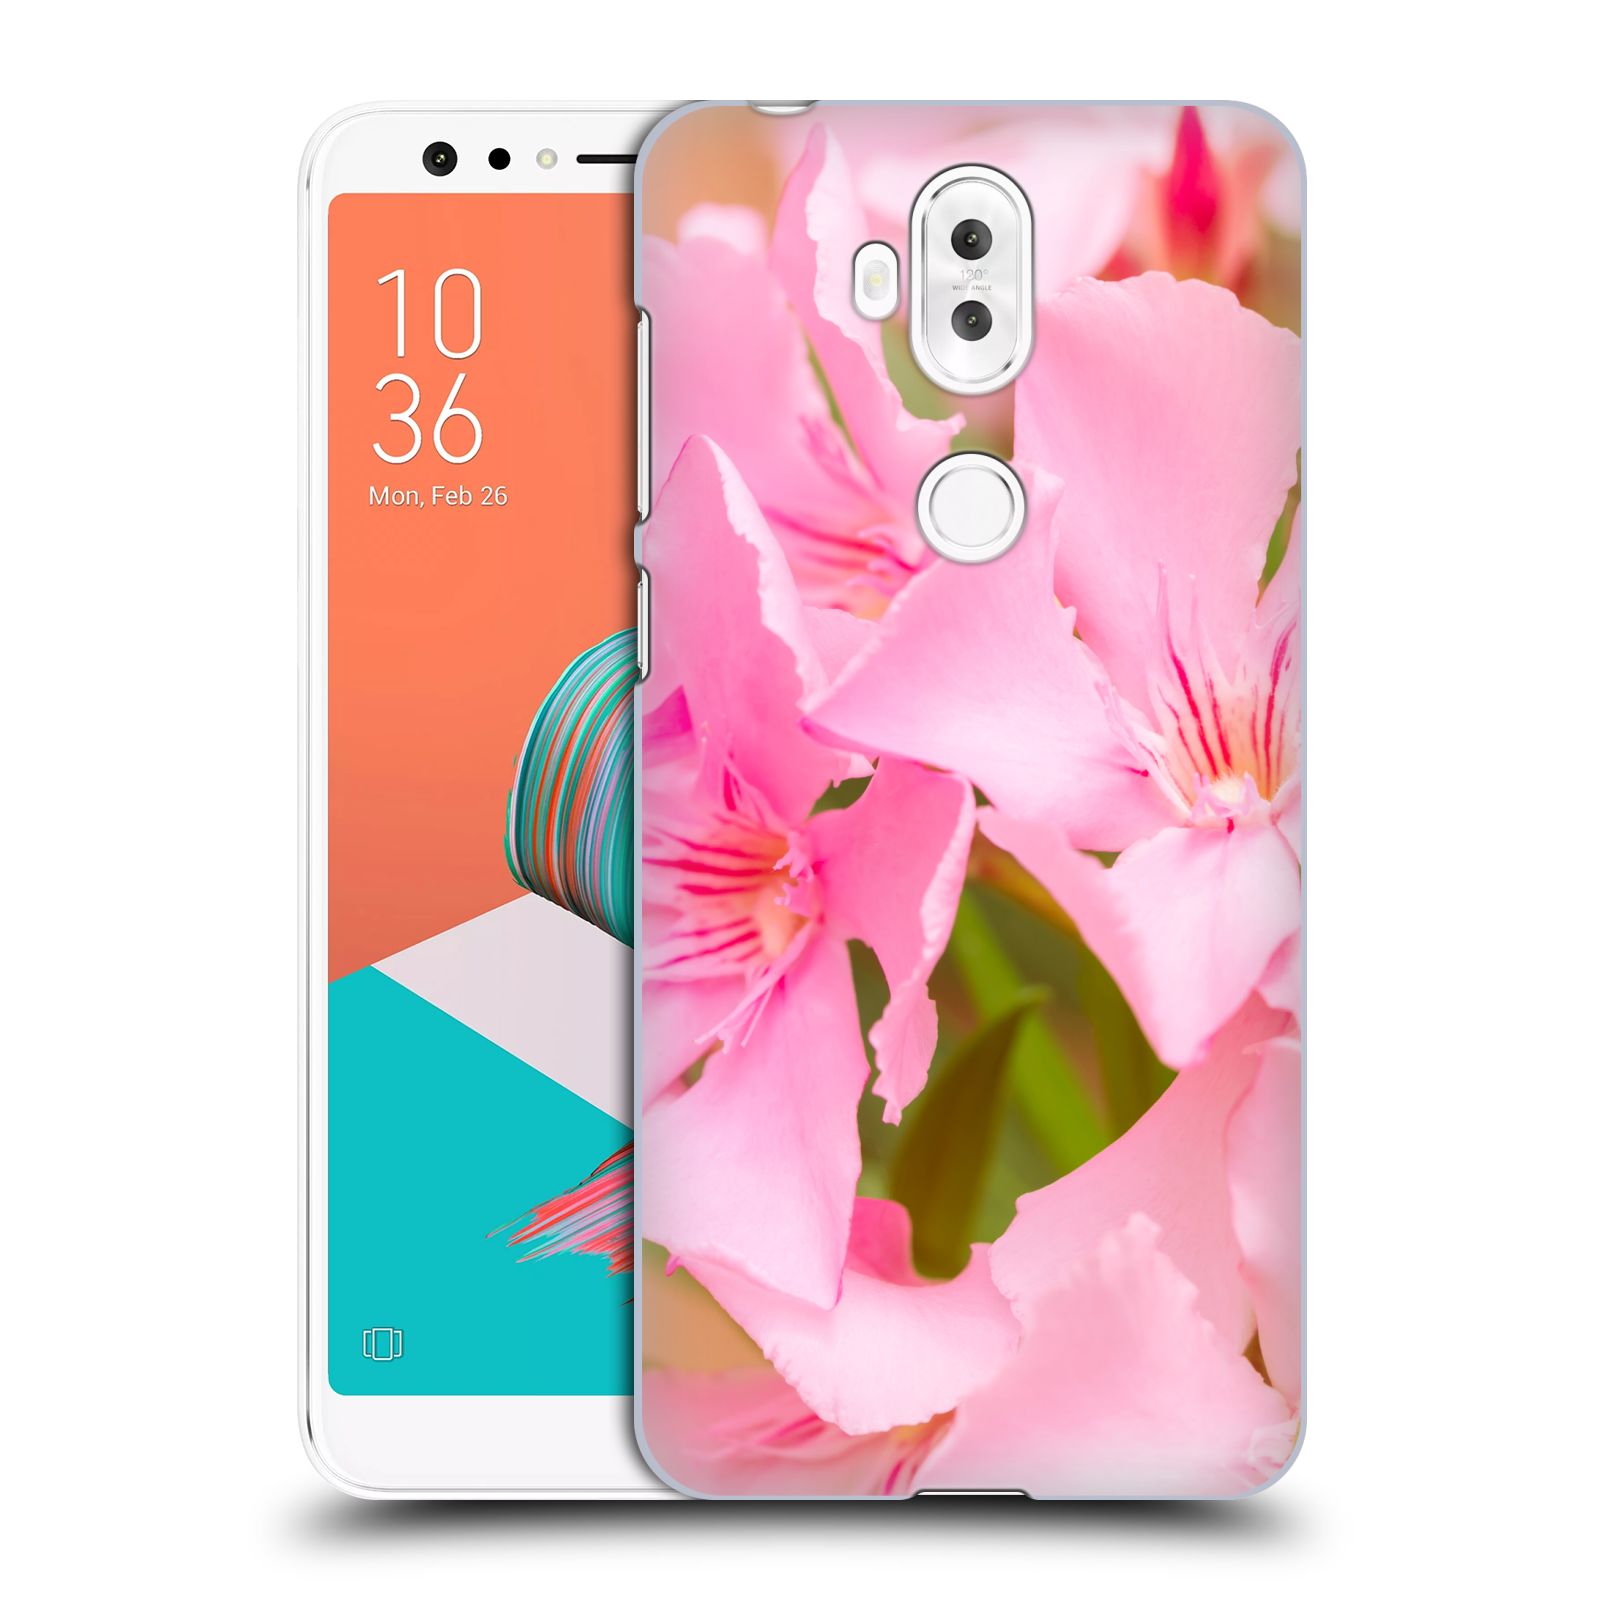 Zadní obal pro mobil Asus Zenfone 5 Lite ZC600KL - HEAD CASE - Beli - Růžové květy květina